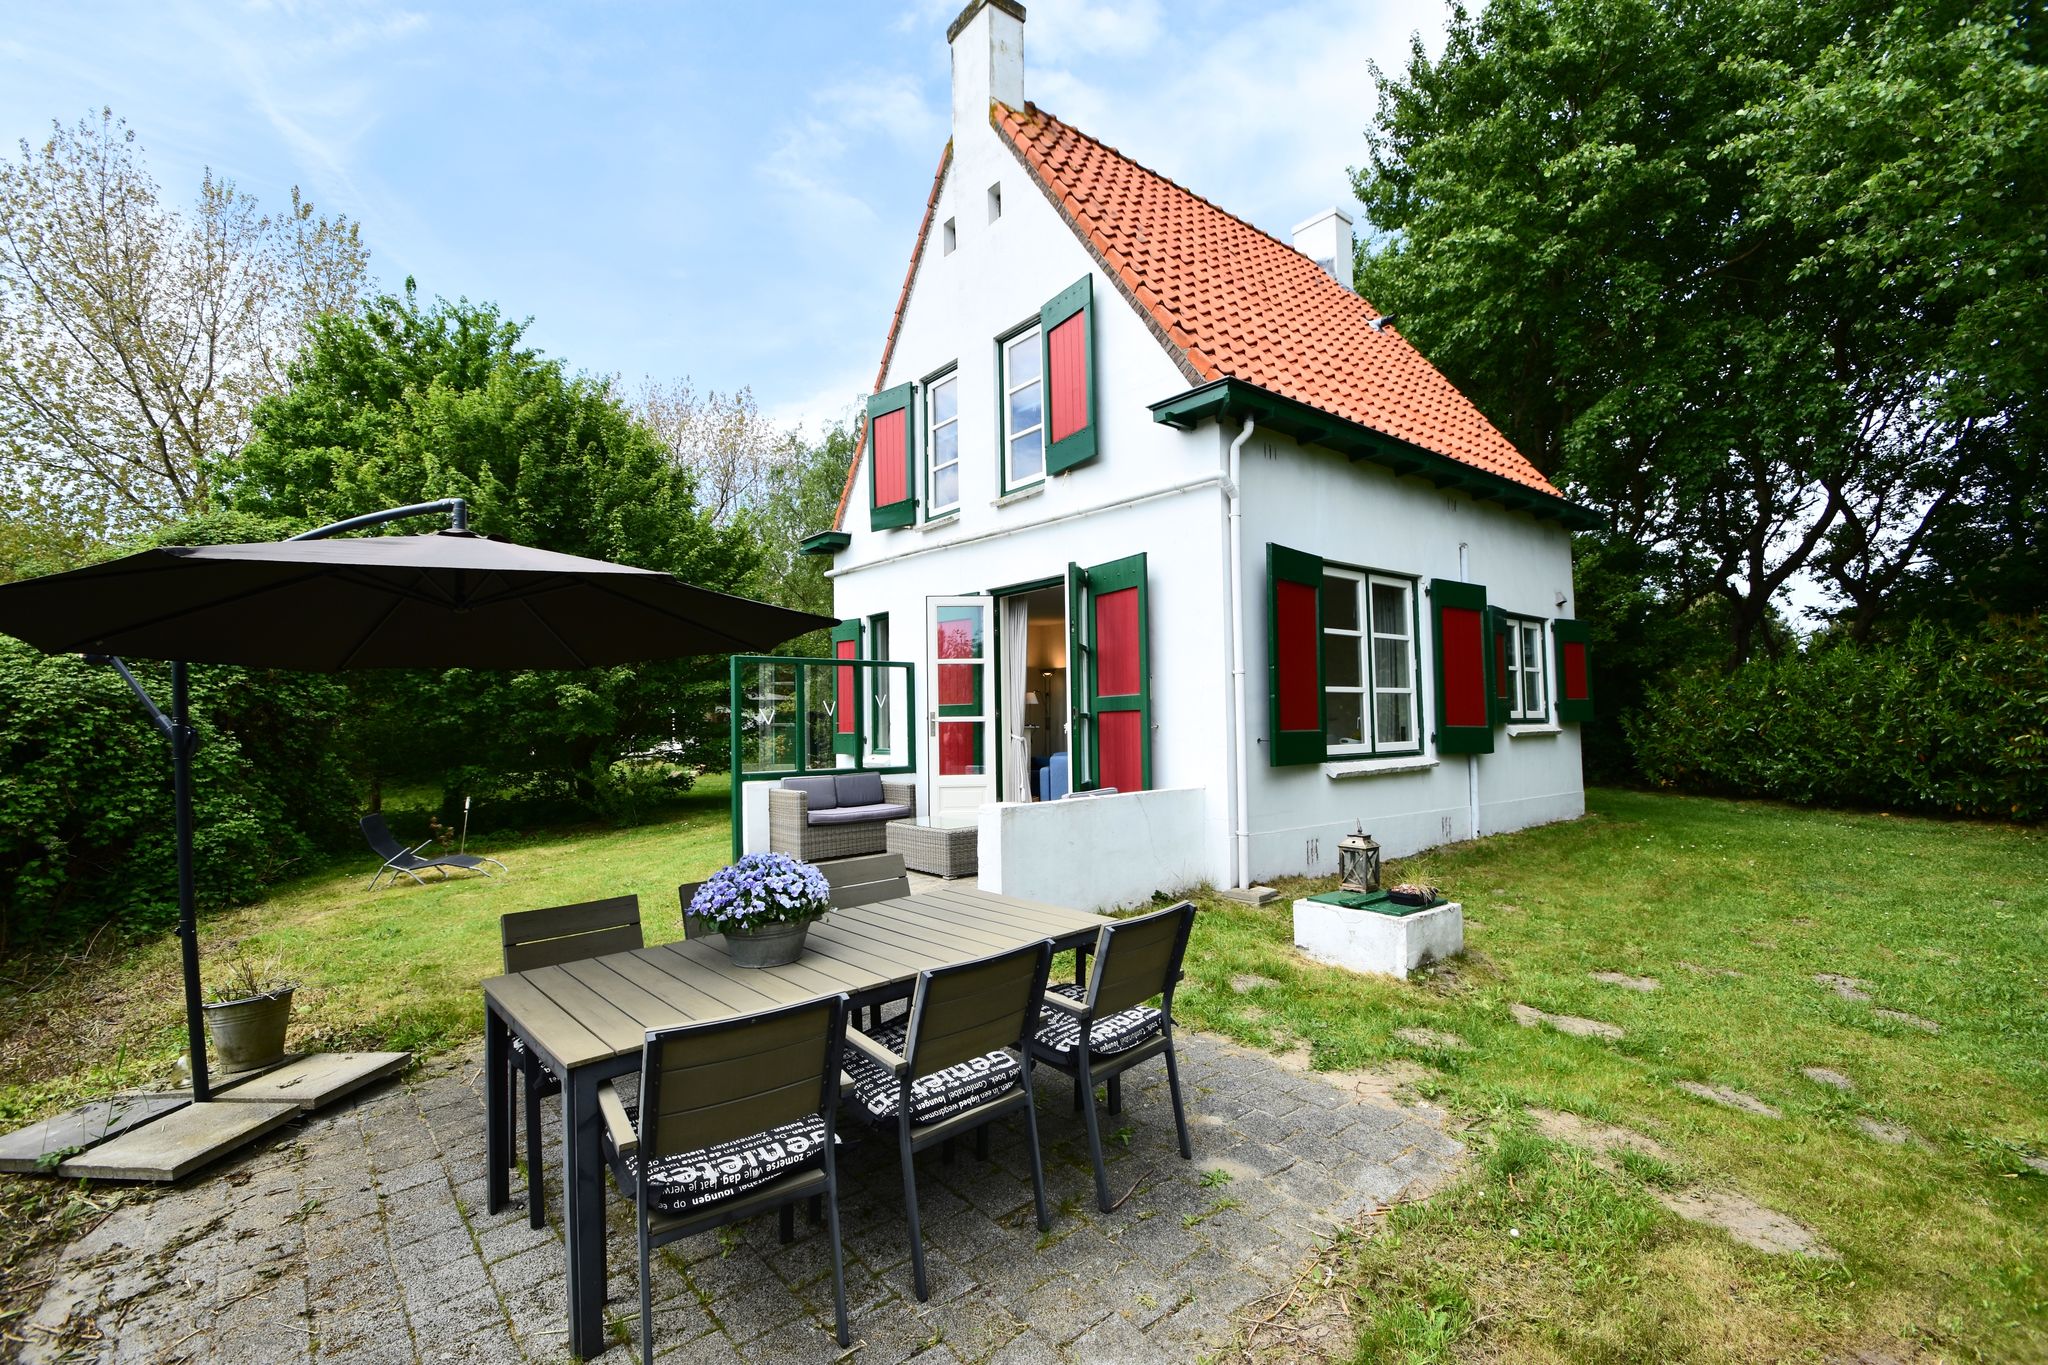 Karakteristiek, vrijstaand huis met enorme tuin vlakbij het strand van Ouddorp